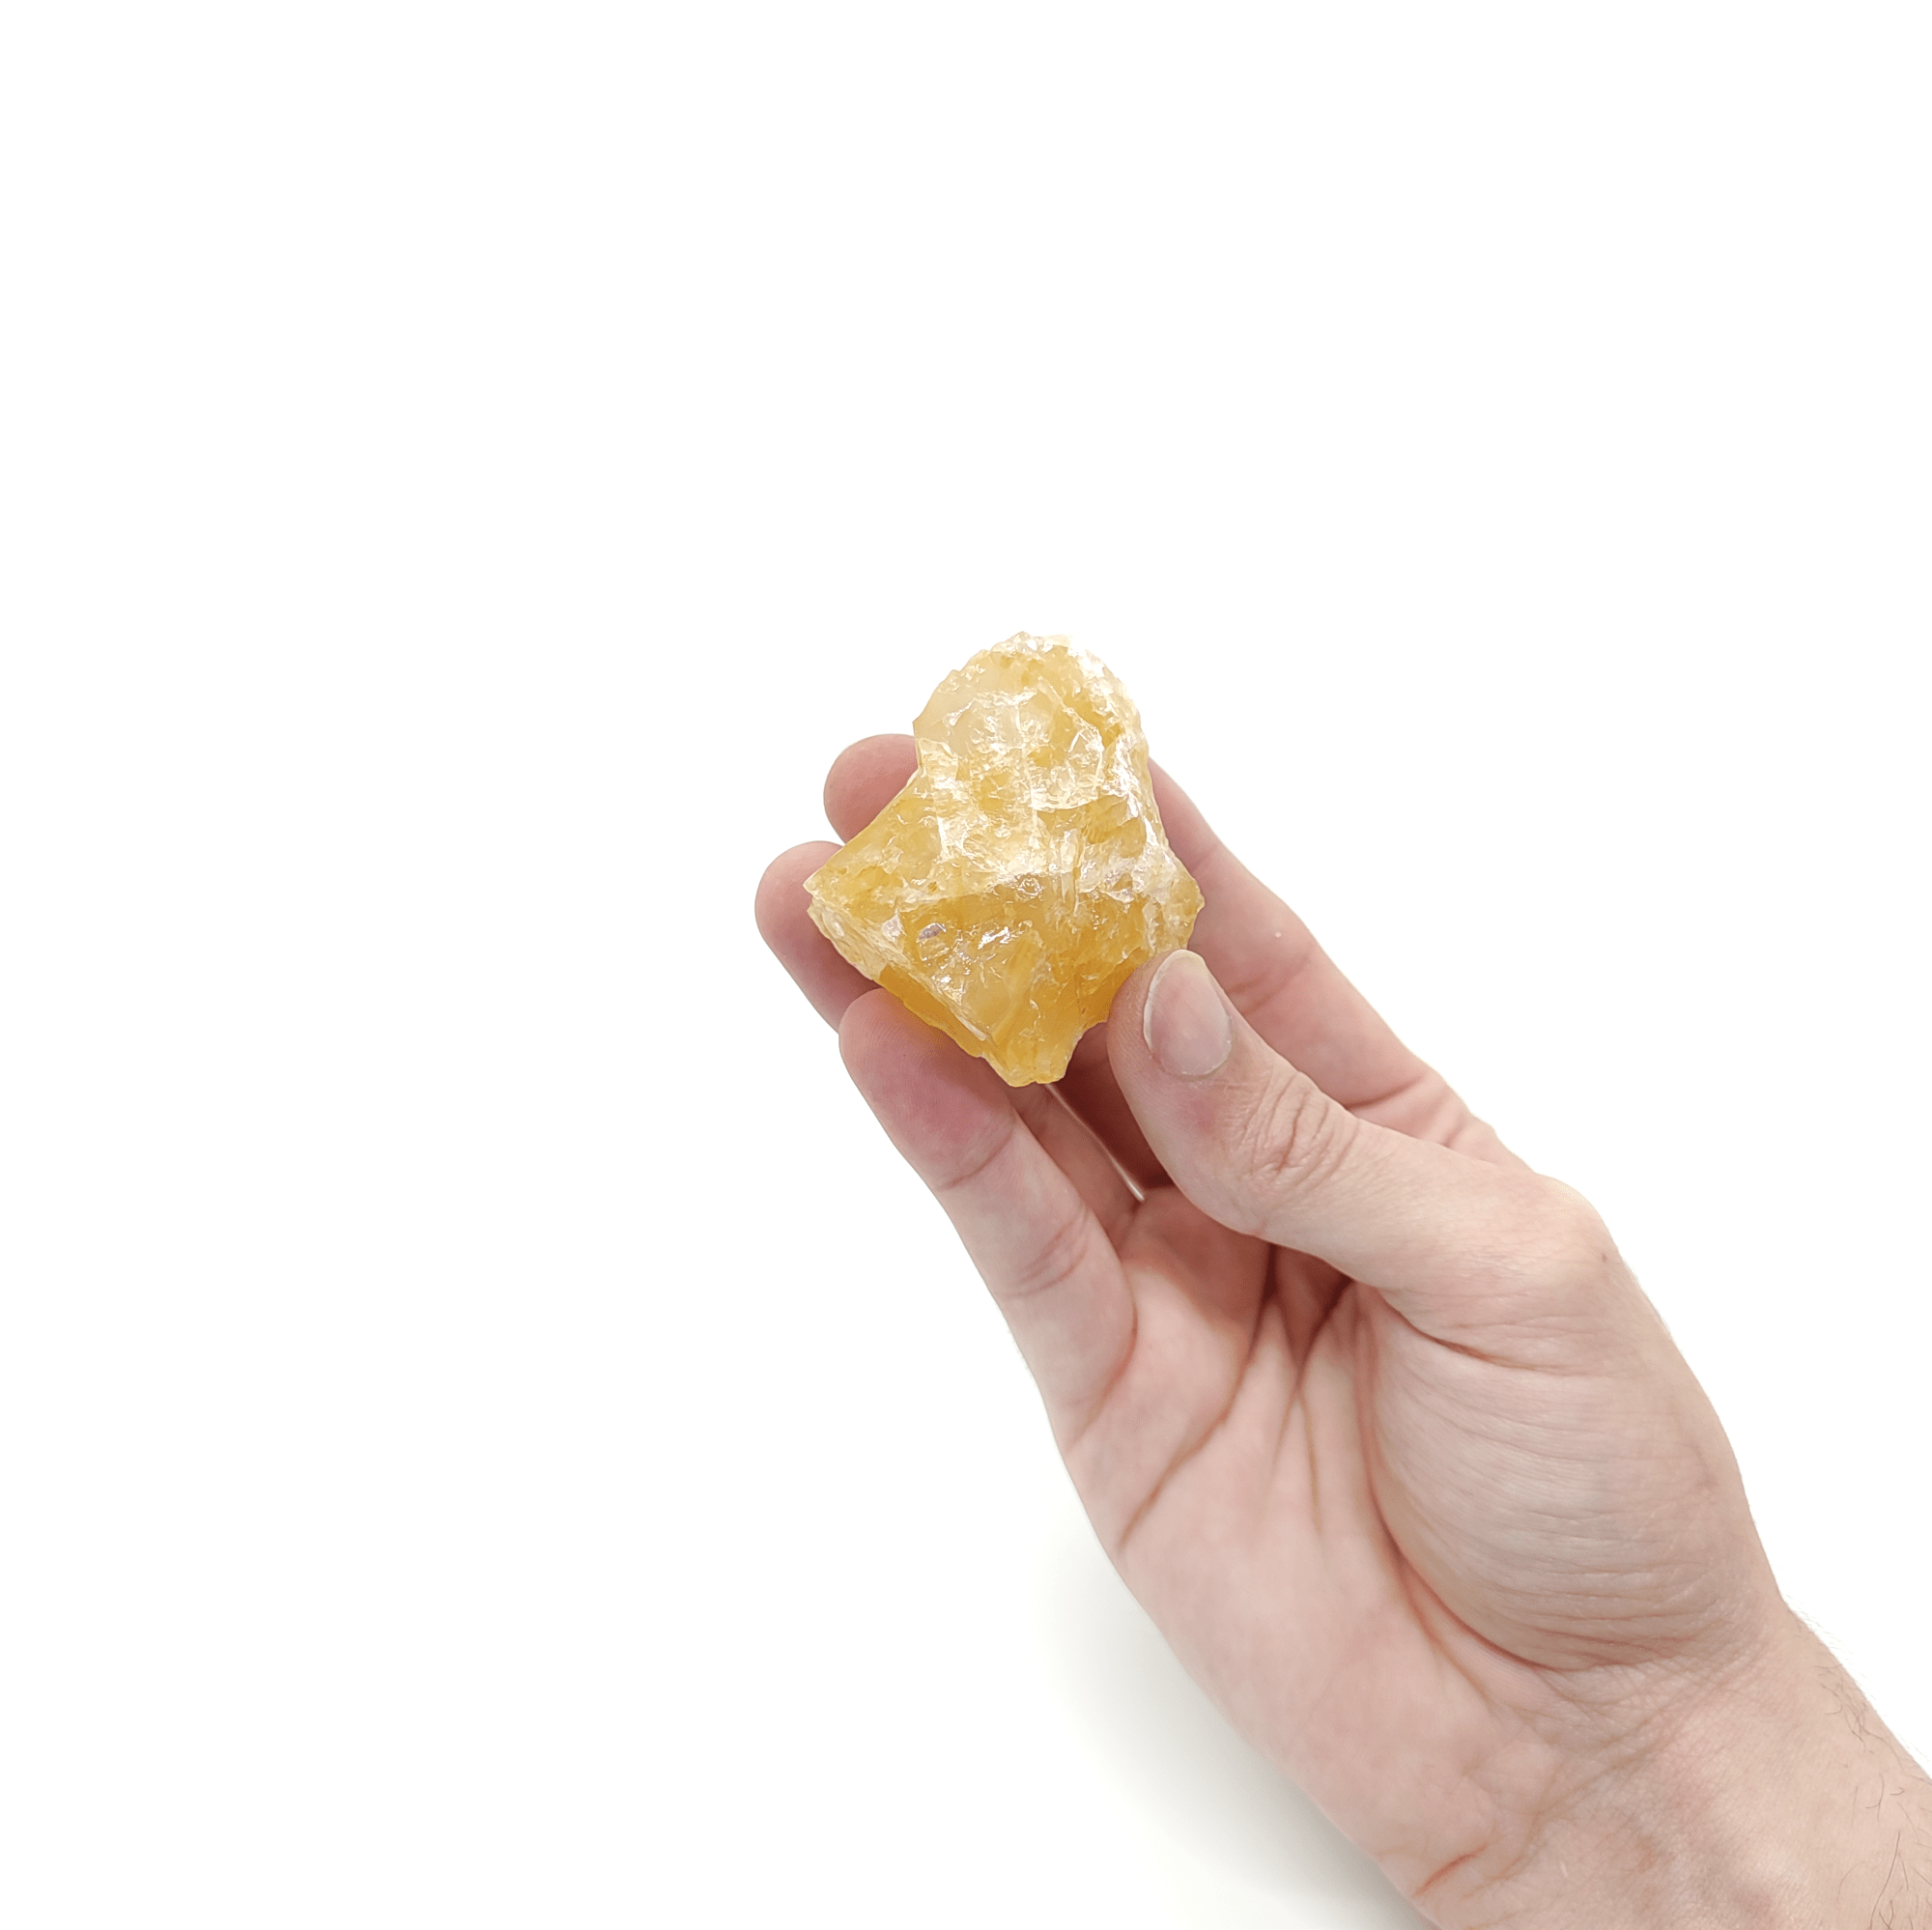 Produktpräsentation eines großen Citrin Rohsteins. Citrin ist ein gelber Quarz.